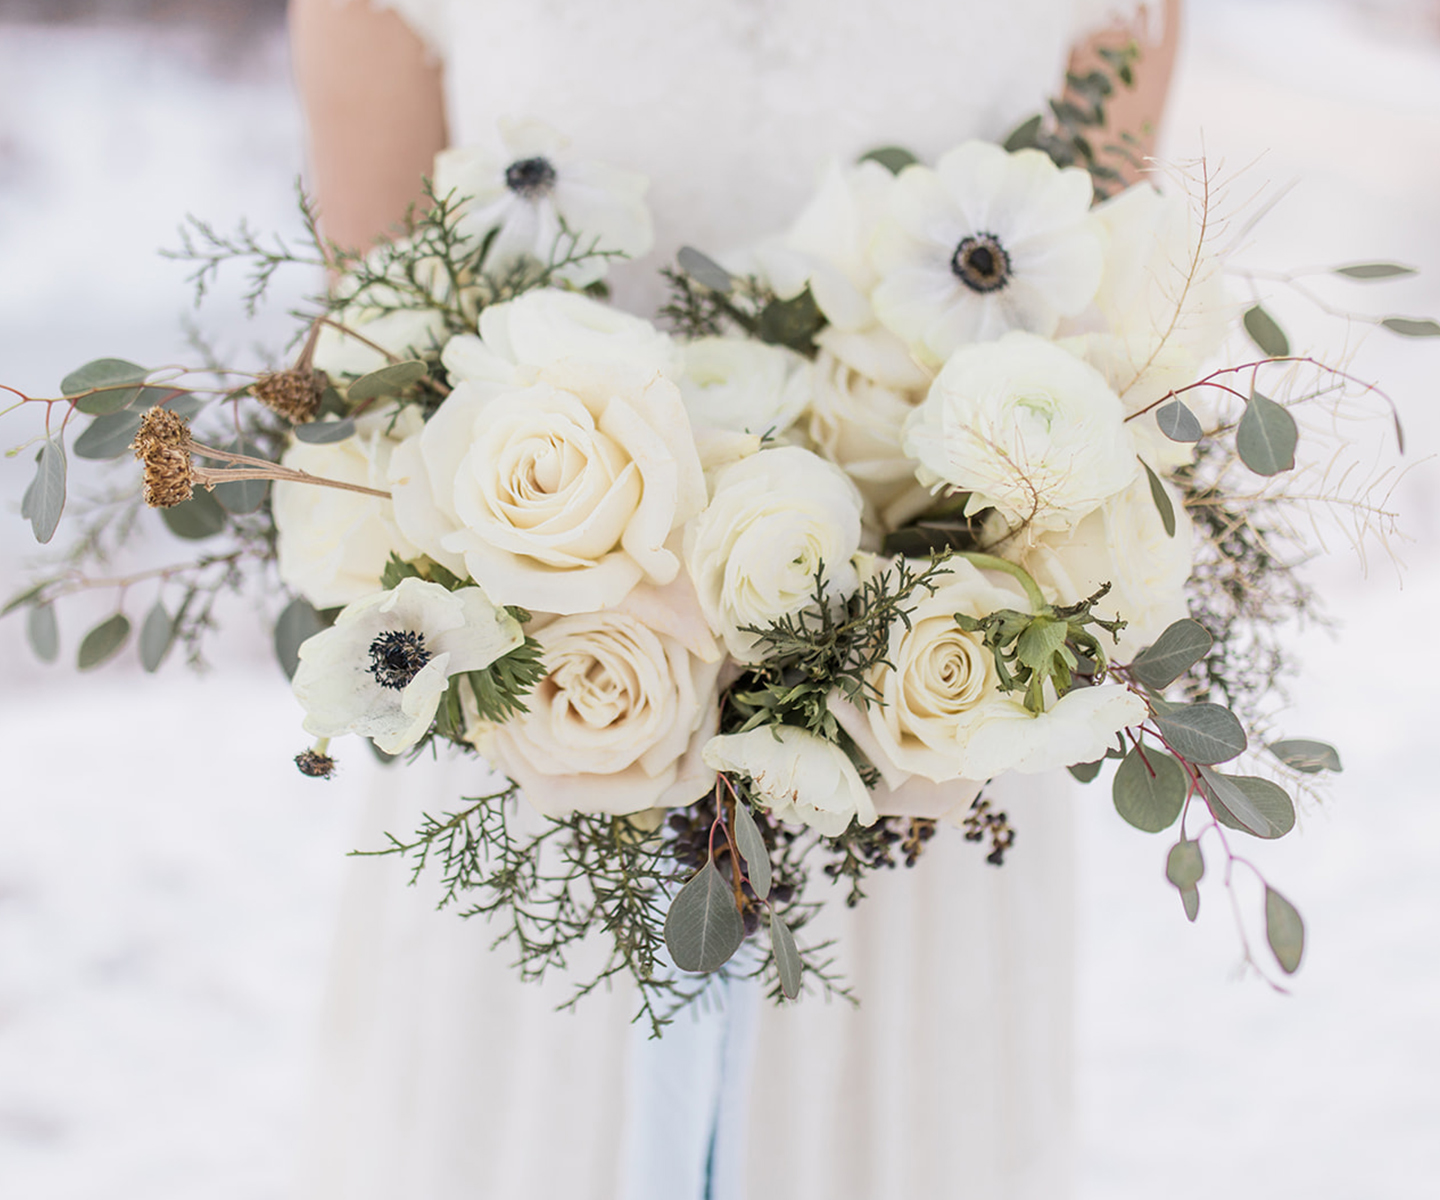 White winter wedding bouquet inspiraiton